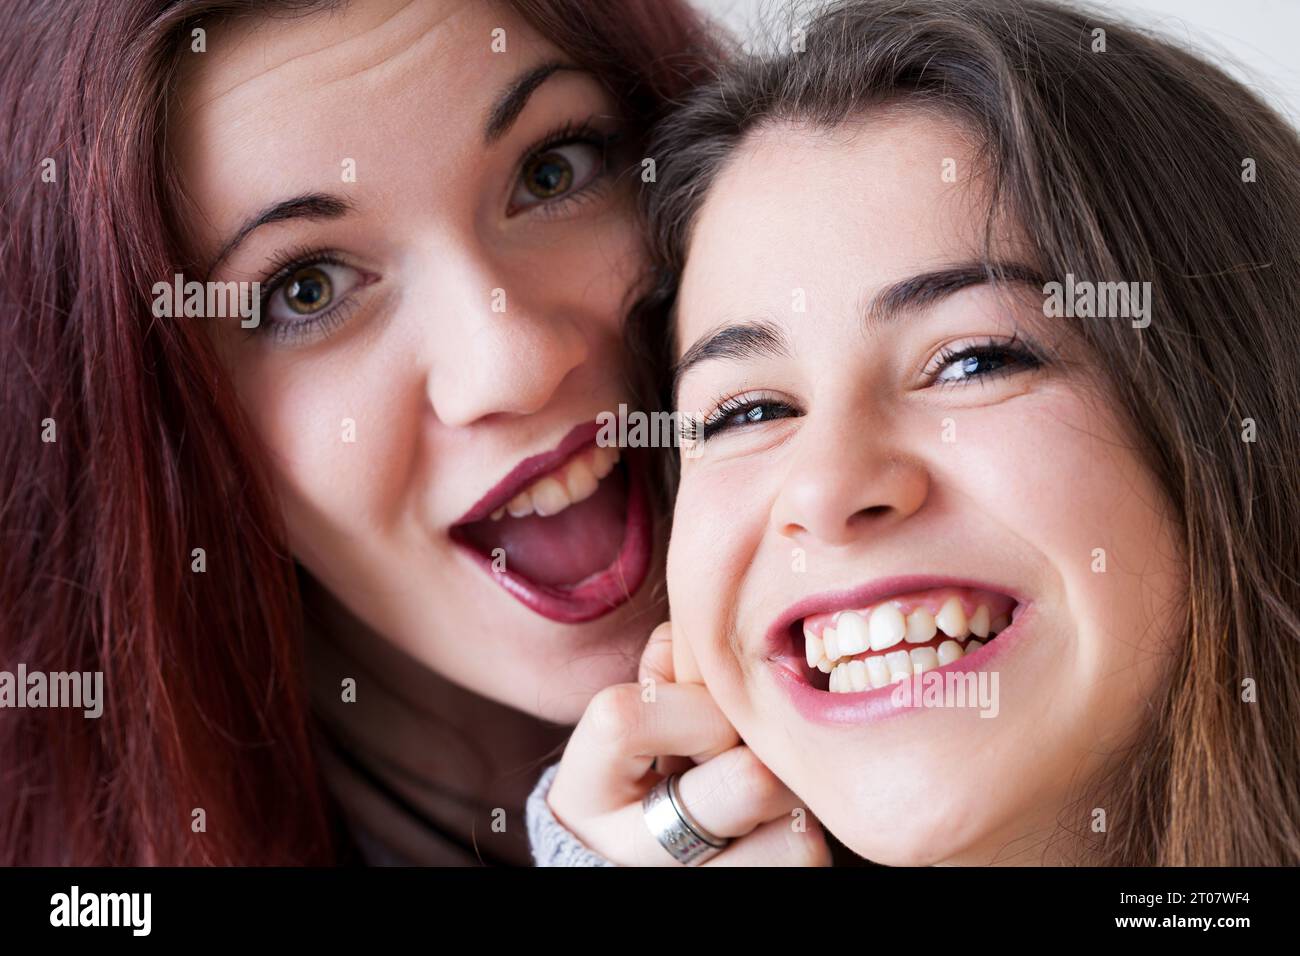 Zwei junge Frauen mit akribischem Make-up und langen Haaren machen gute Gesichter für Selfies. Sie strahlen Freude und Sorgfalt aus und experimentieren spielerisch mit Expres Stockfoto